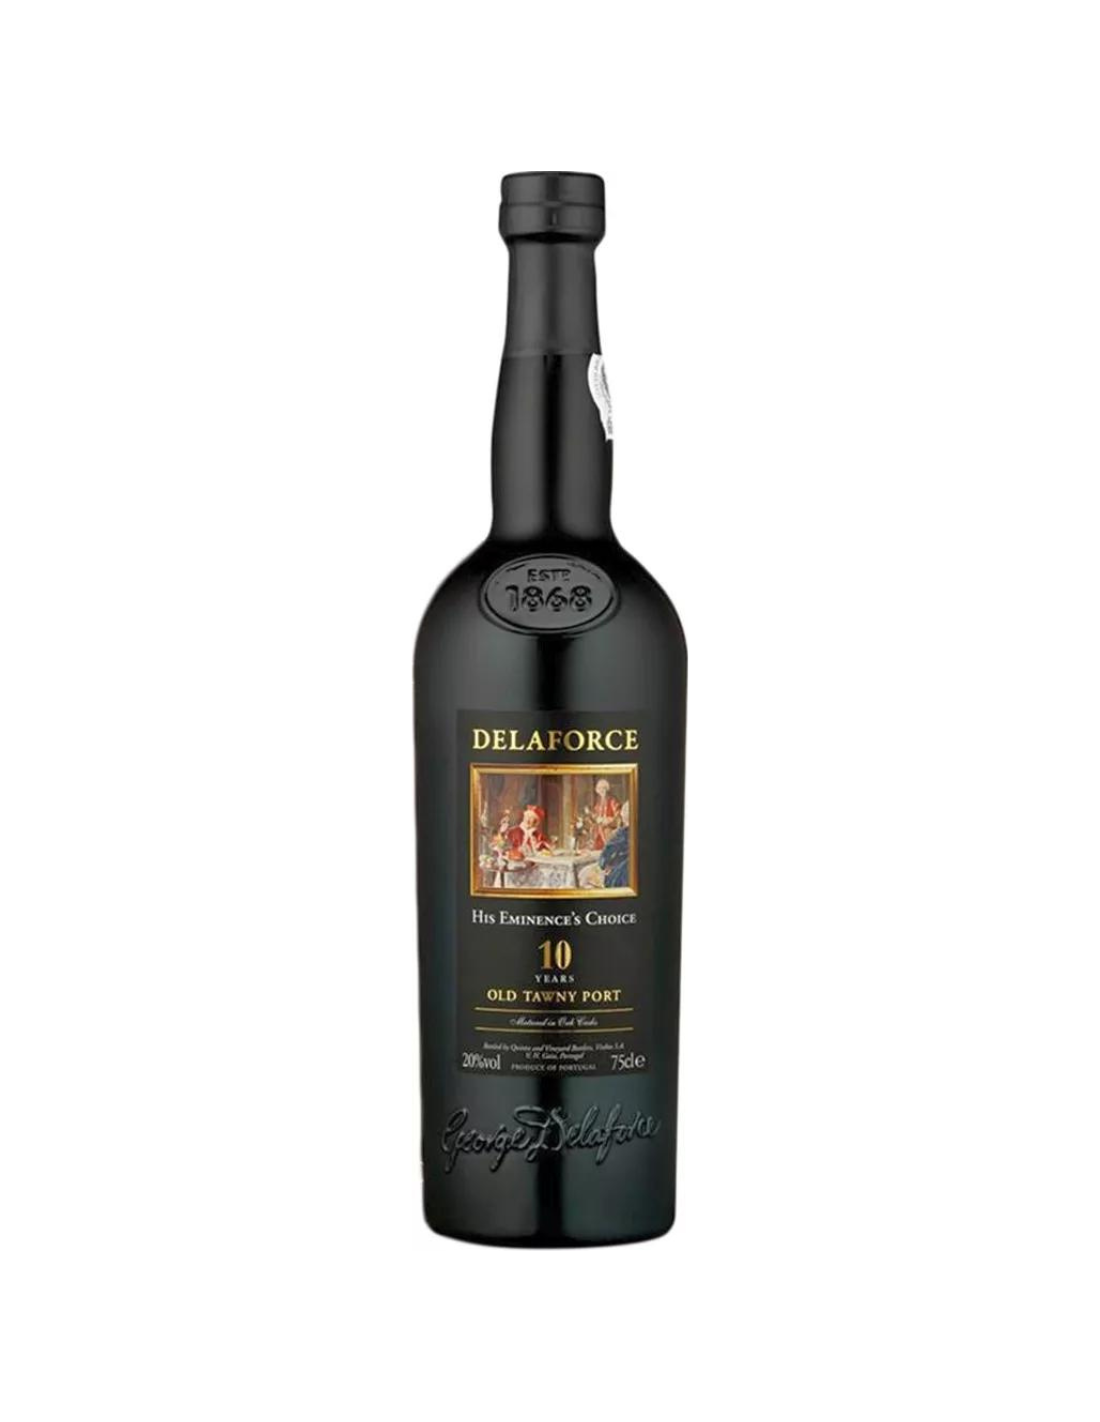 Vin porto rosu dulce Delaforce Old Tawny 10 ani, 0.75L, 20% alc., Portugalia alcooldiscount.ro